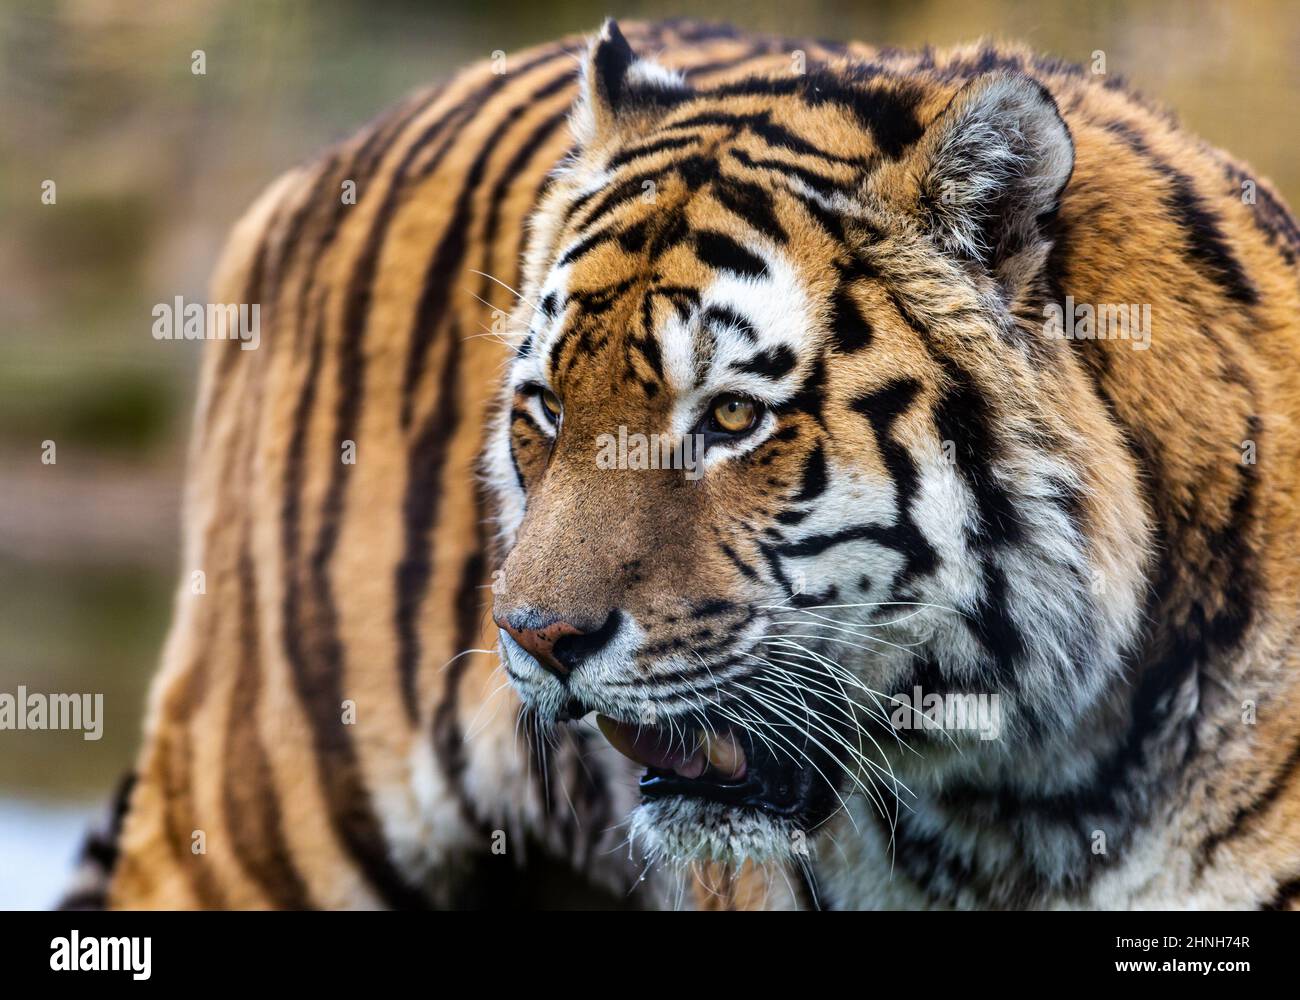 Amur Tiger en el parque de vida salvaje South Yorkshire Foto de stock